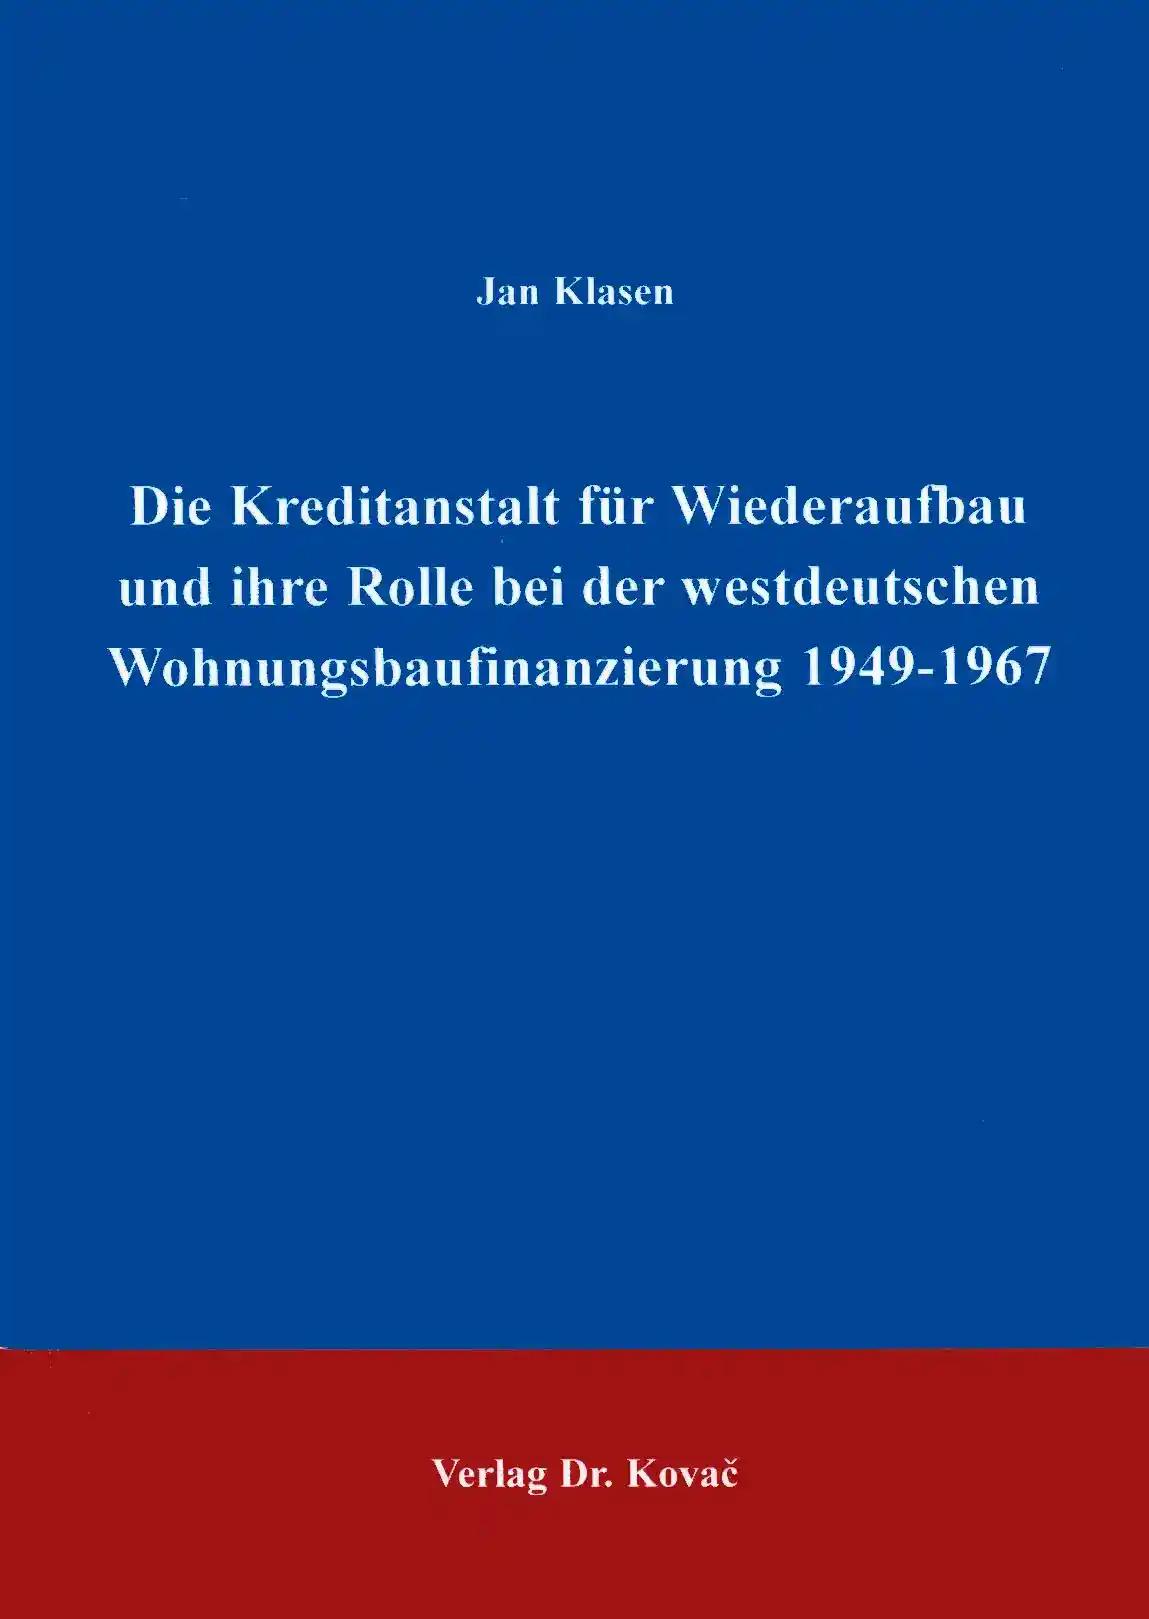 Die Kreditanstalt für Wiederaufbau und ihre Rolle in der westdeutschen Wohnungsbaufinanzierung 1949-1967 . (Studien zur Zeitgeschichte)